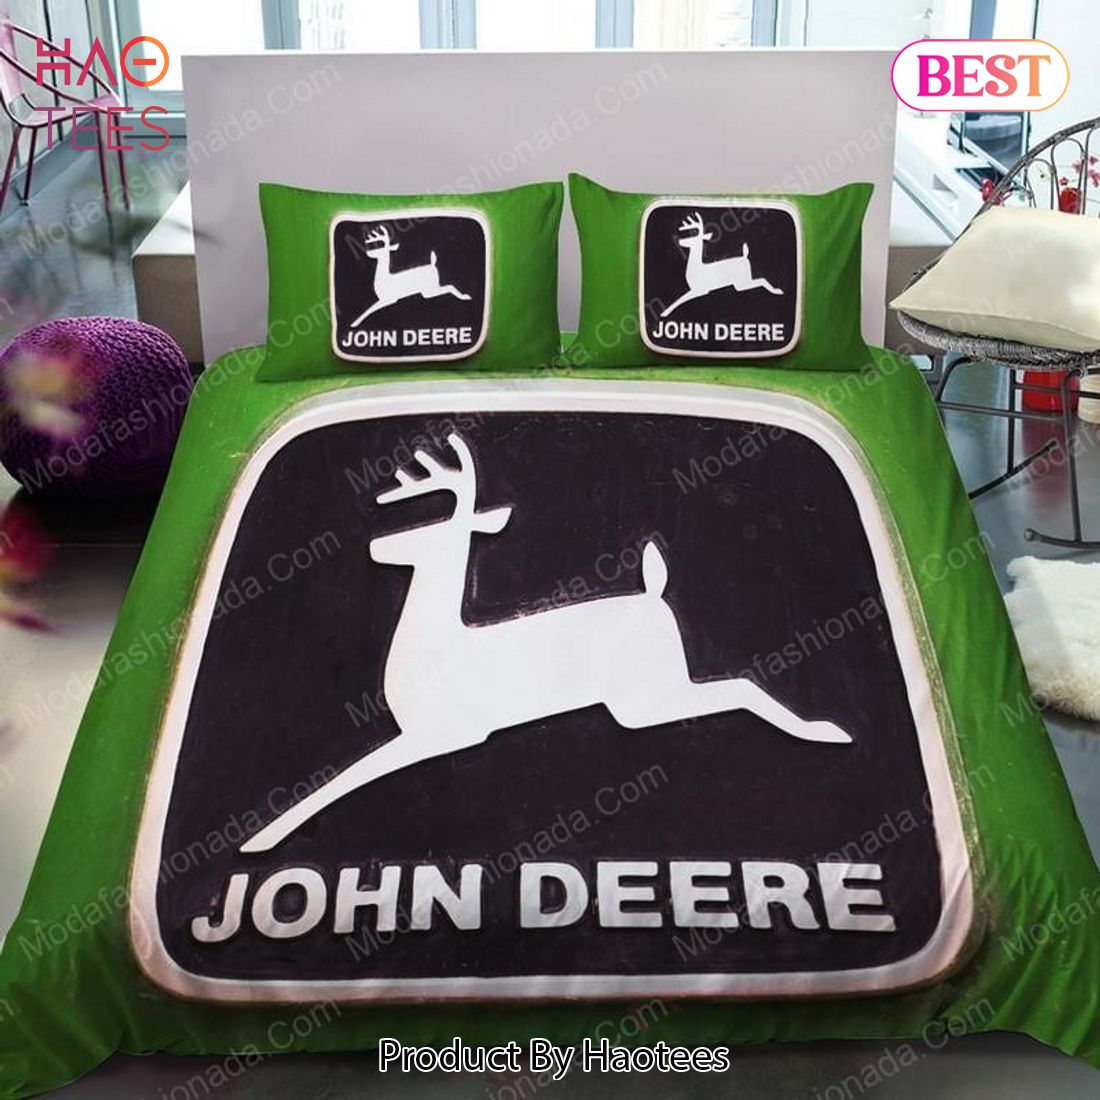 Buy John Deere Equipment Brands 10 Bedding Set Bed Sets, Bedroom Sets, Comforter Sets, Duvet Cover, Bedspread